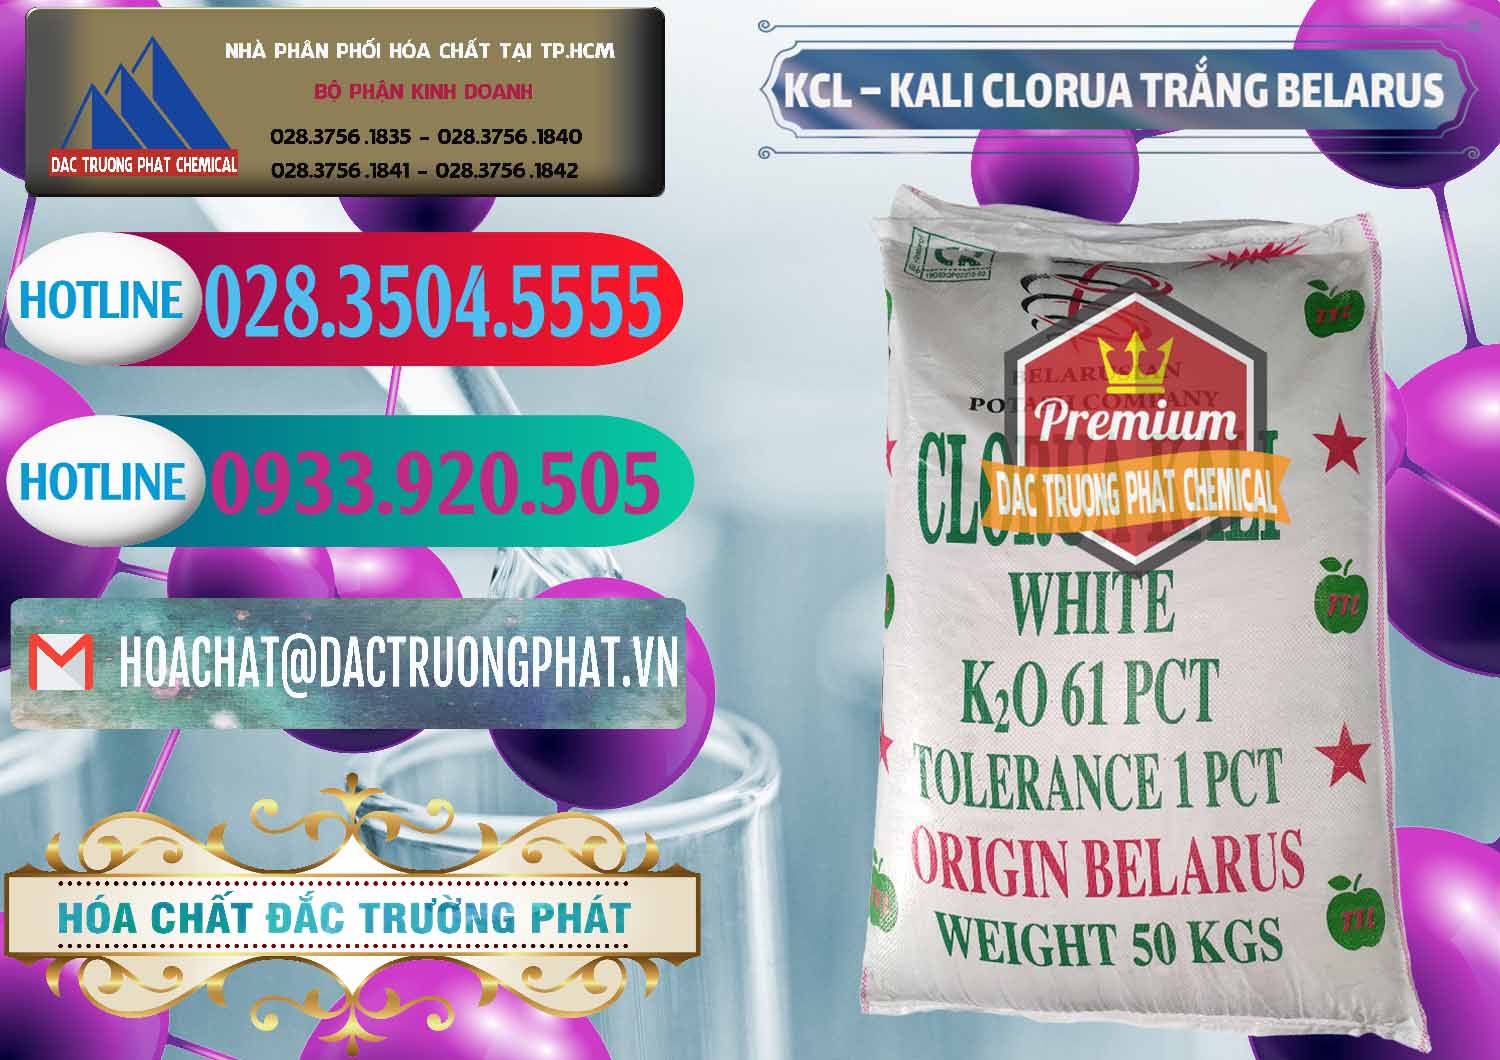 Đơn vị chuyên phân phối & bán KCL – Kali Clorua Trắng Belarus - 0085 - Nơi chuyên cung cấp _ nhập khẩu hóa chất tại TP.HCM - truongphat.vn